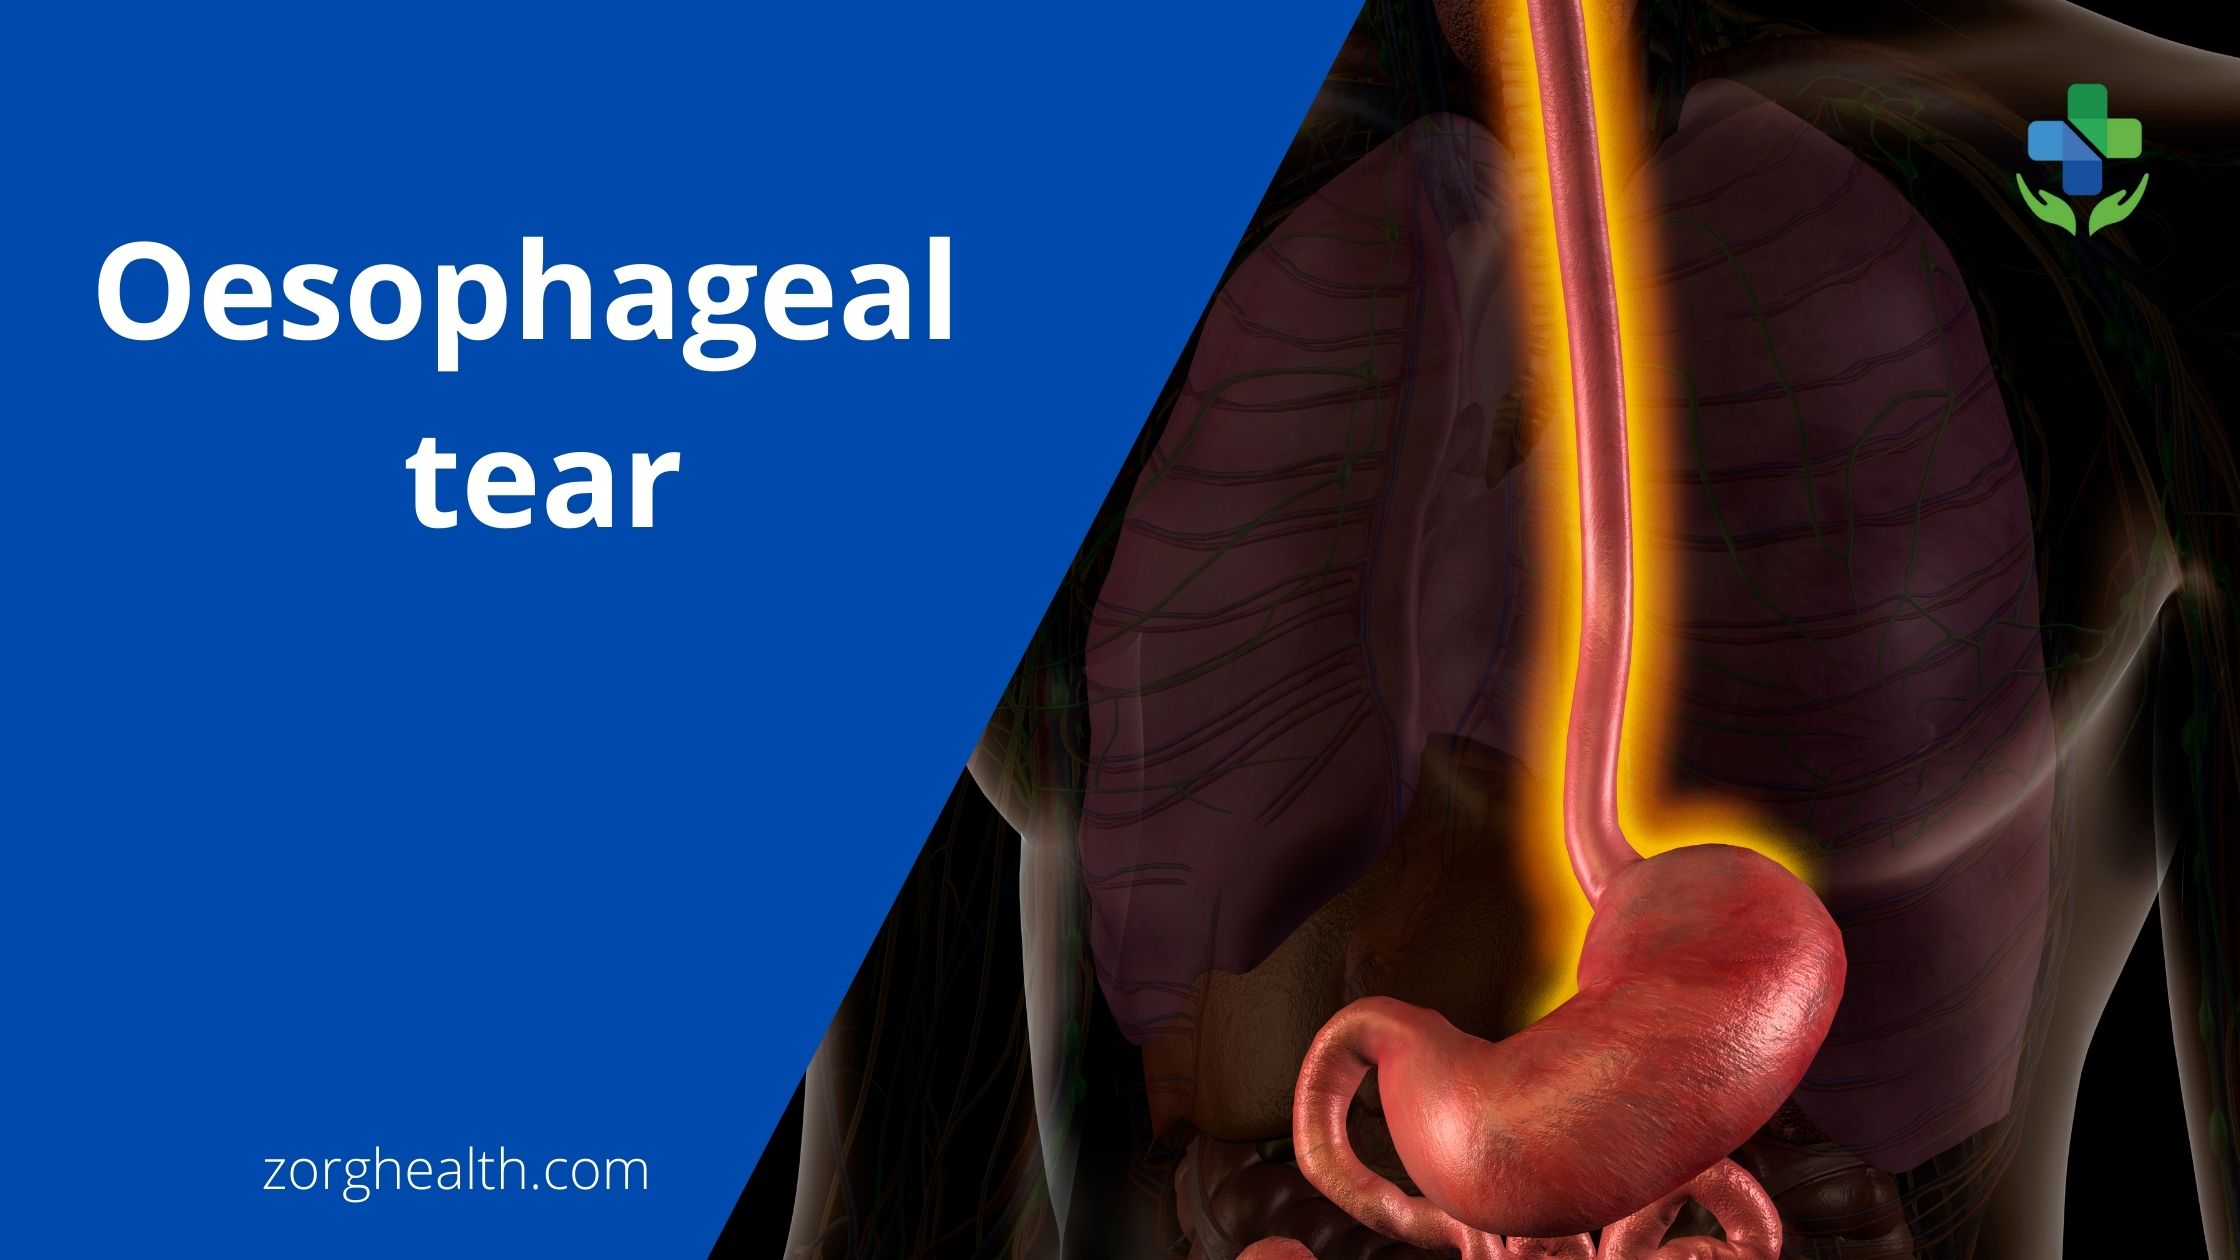 Oesophageal tear